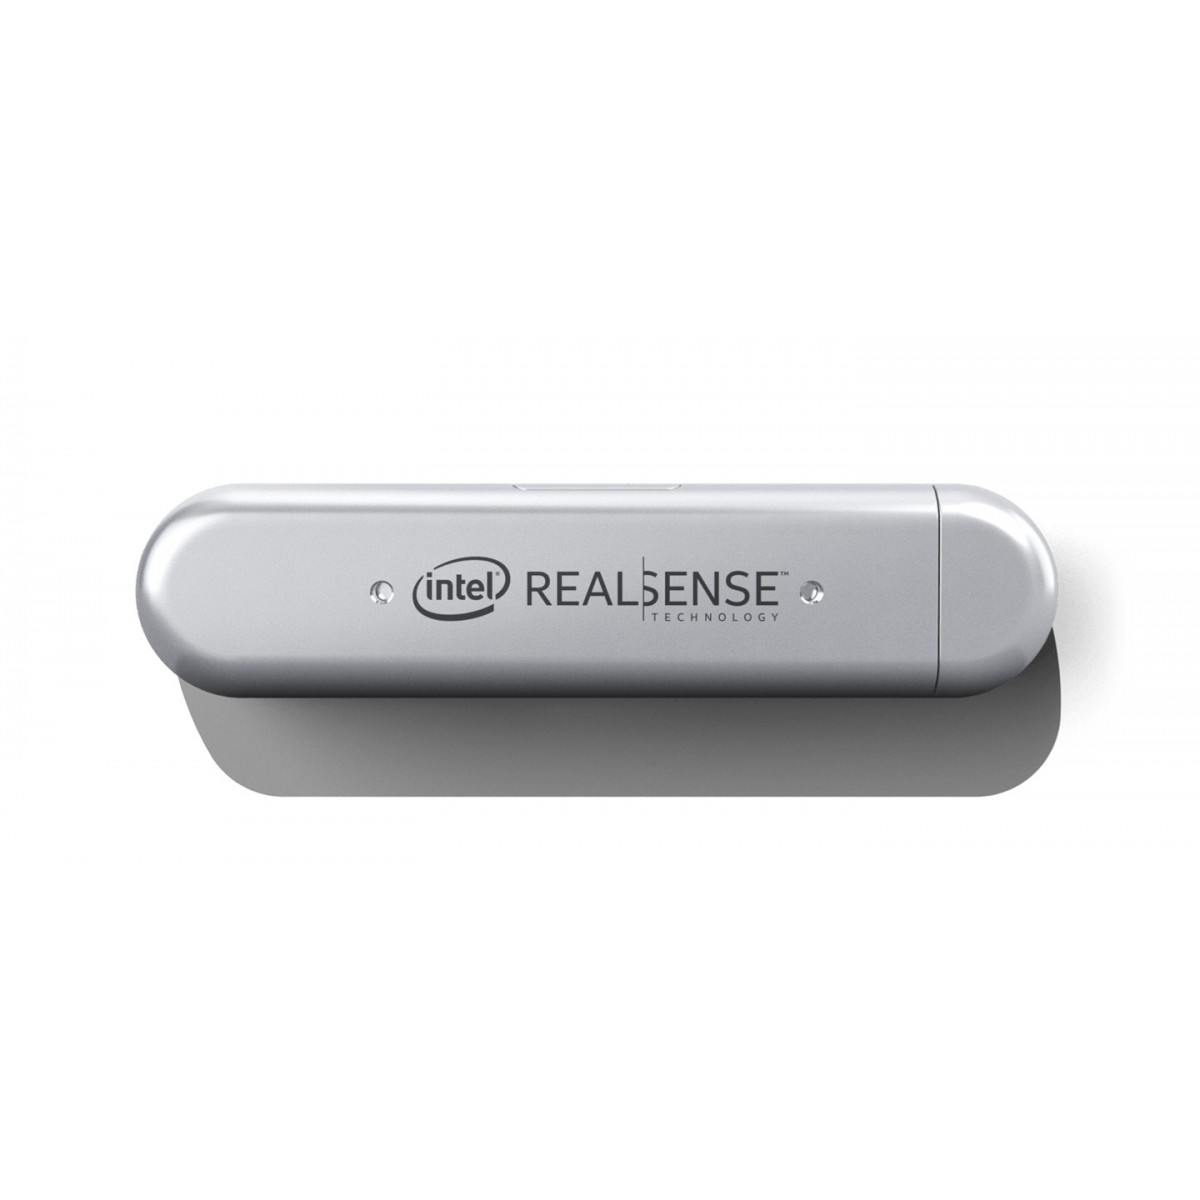 Intel RealSense D415 - Camera - Intel - Silver - 10 m - 0.16 m - 1920 x 1080 pixels